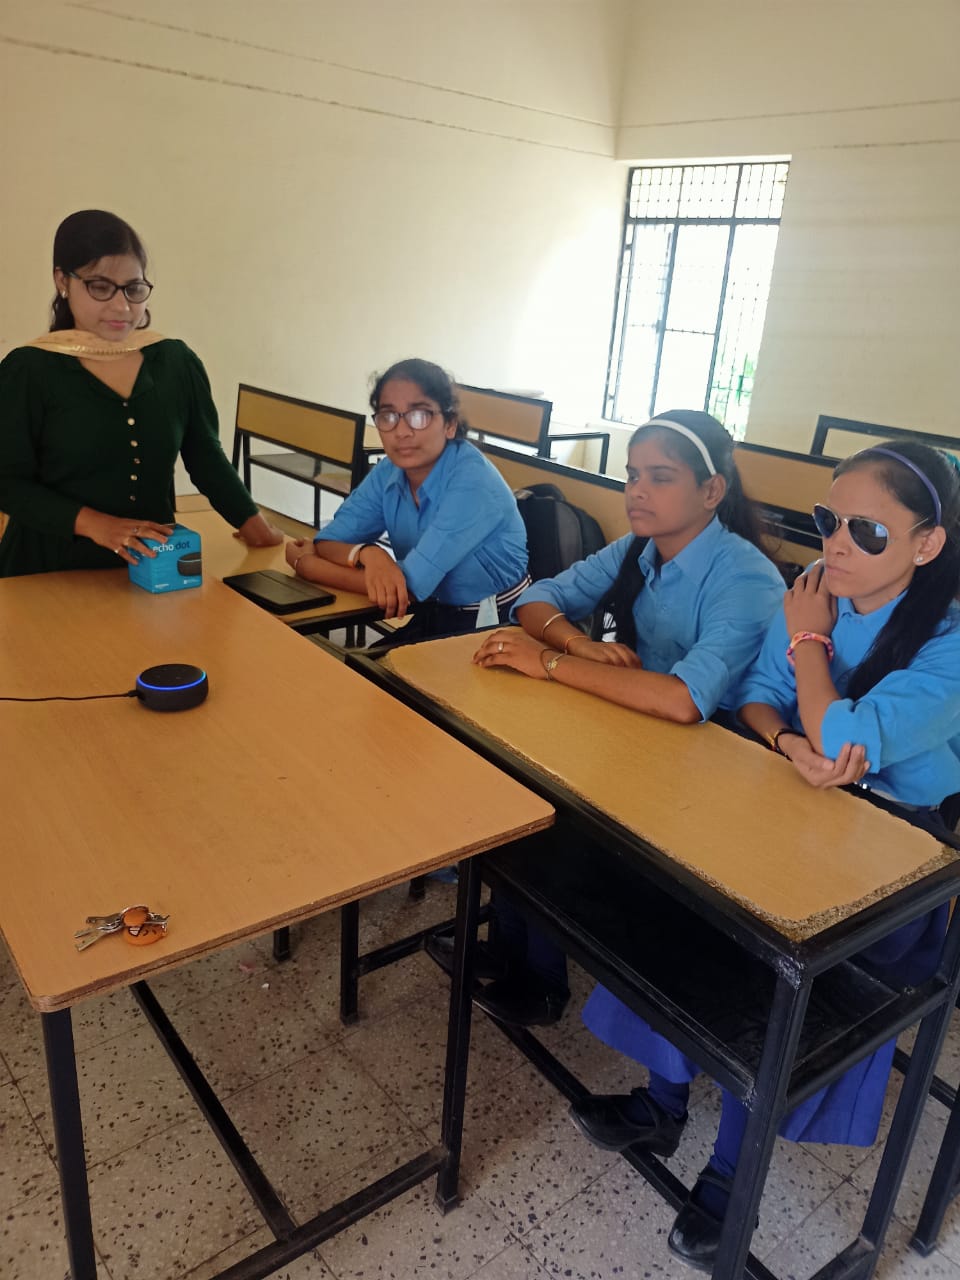 Teacher Kalindi uses the Amazon Echo Dot speaker for classes